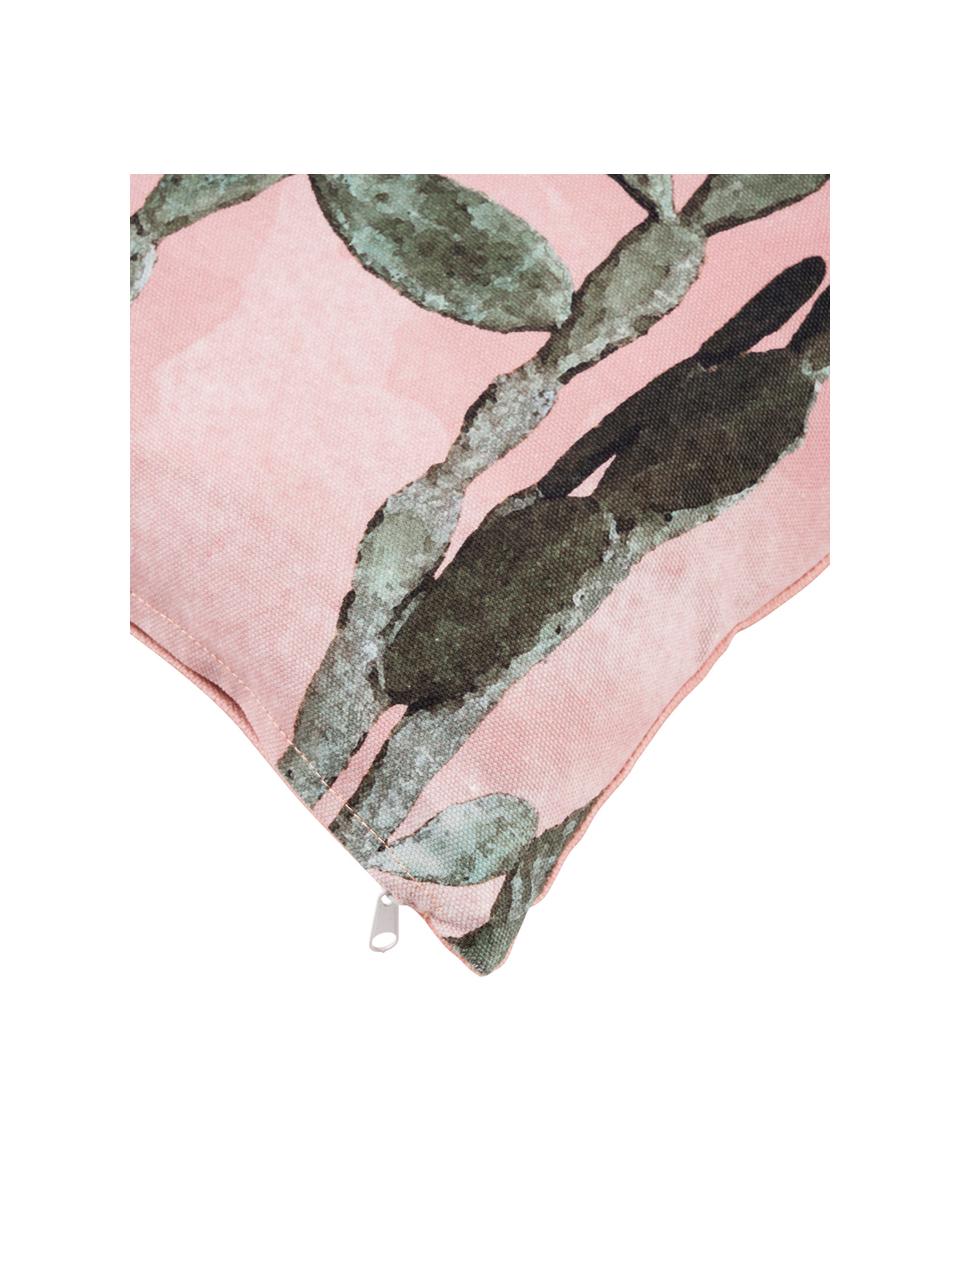 Poszewka na poduszkę Montezuma, 100% bawełna, Blady różowy, zielony, S 50 x D 50 cm